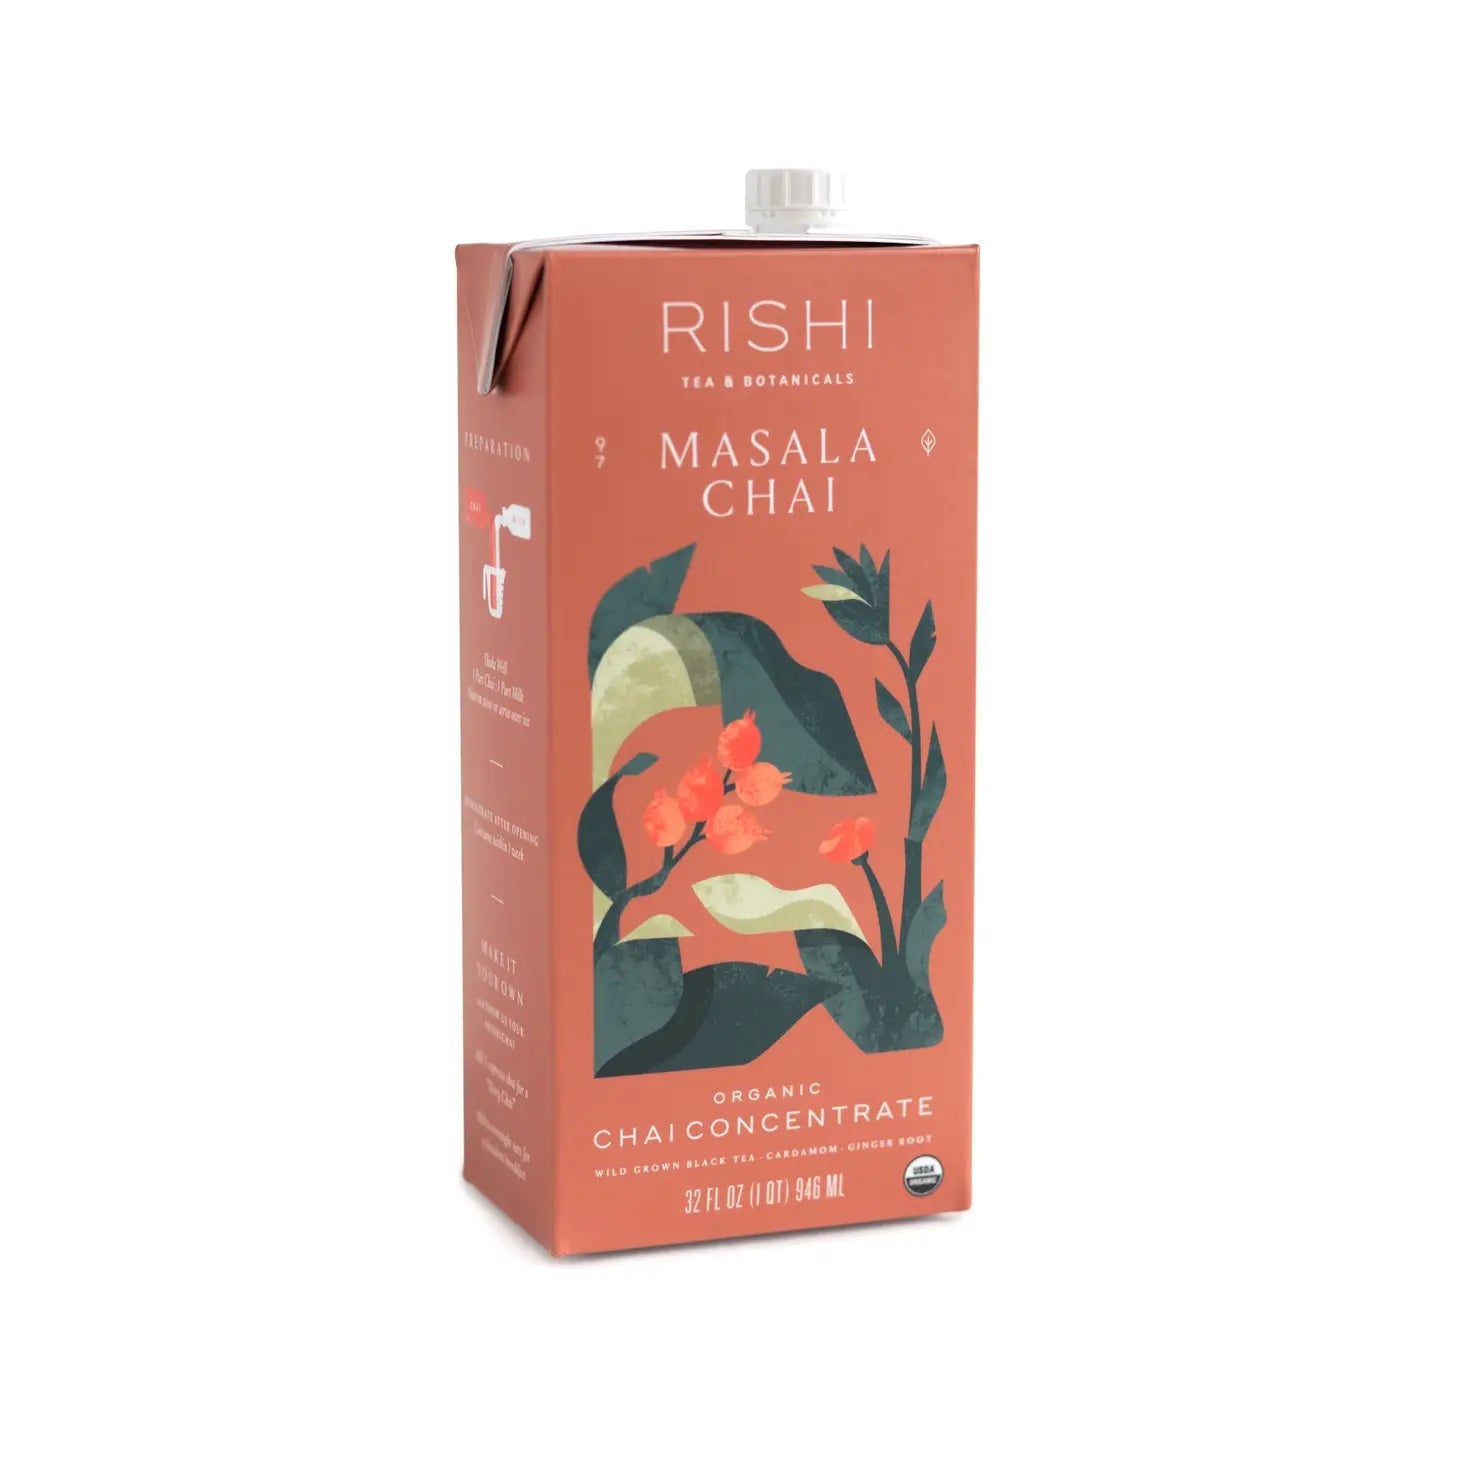 Rishi Masala Chai Organic Tea Concentrate - BKLYN Larder